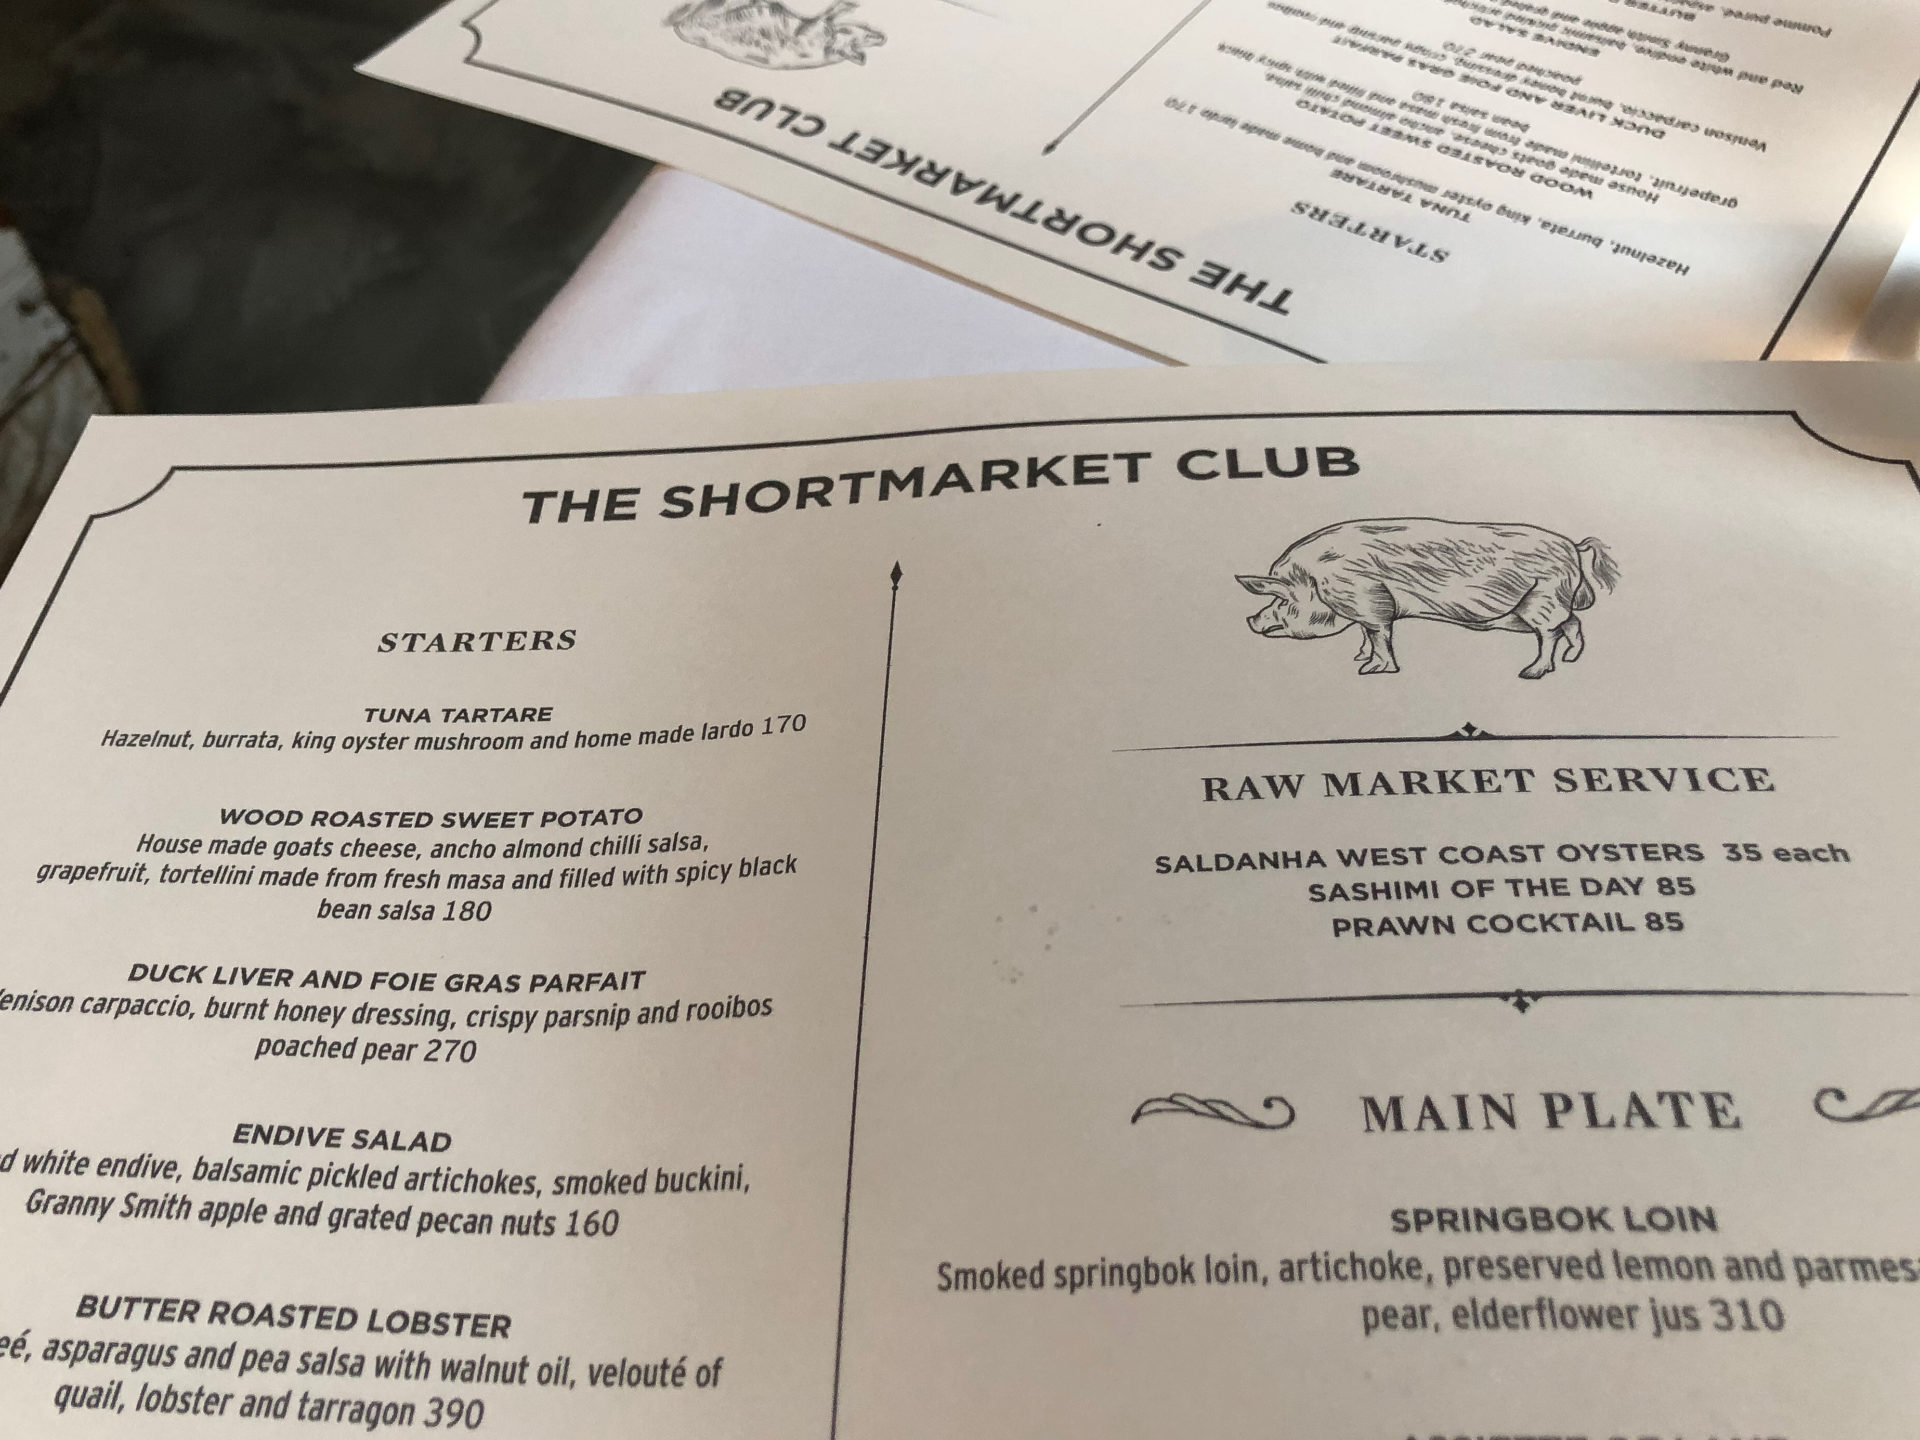 Speisekarte des Shortmarket Club, dem wohl besten Restaurant in Johannesburg